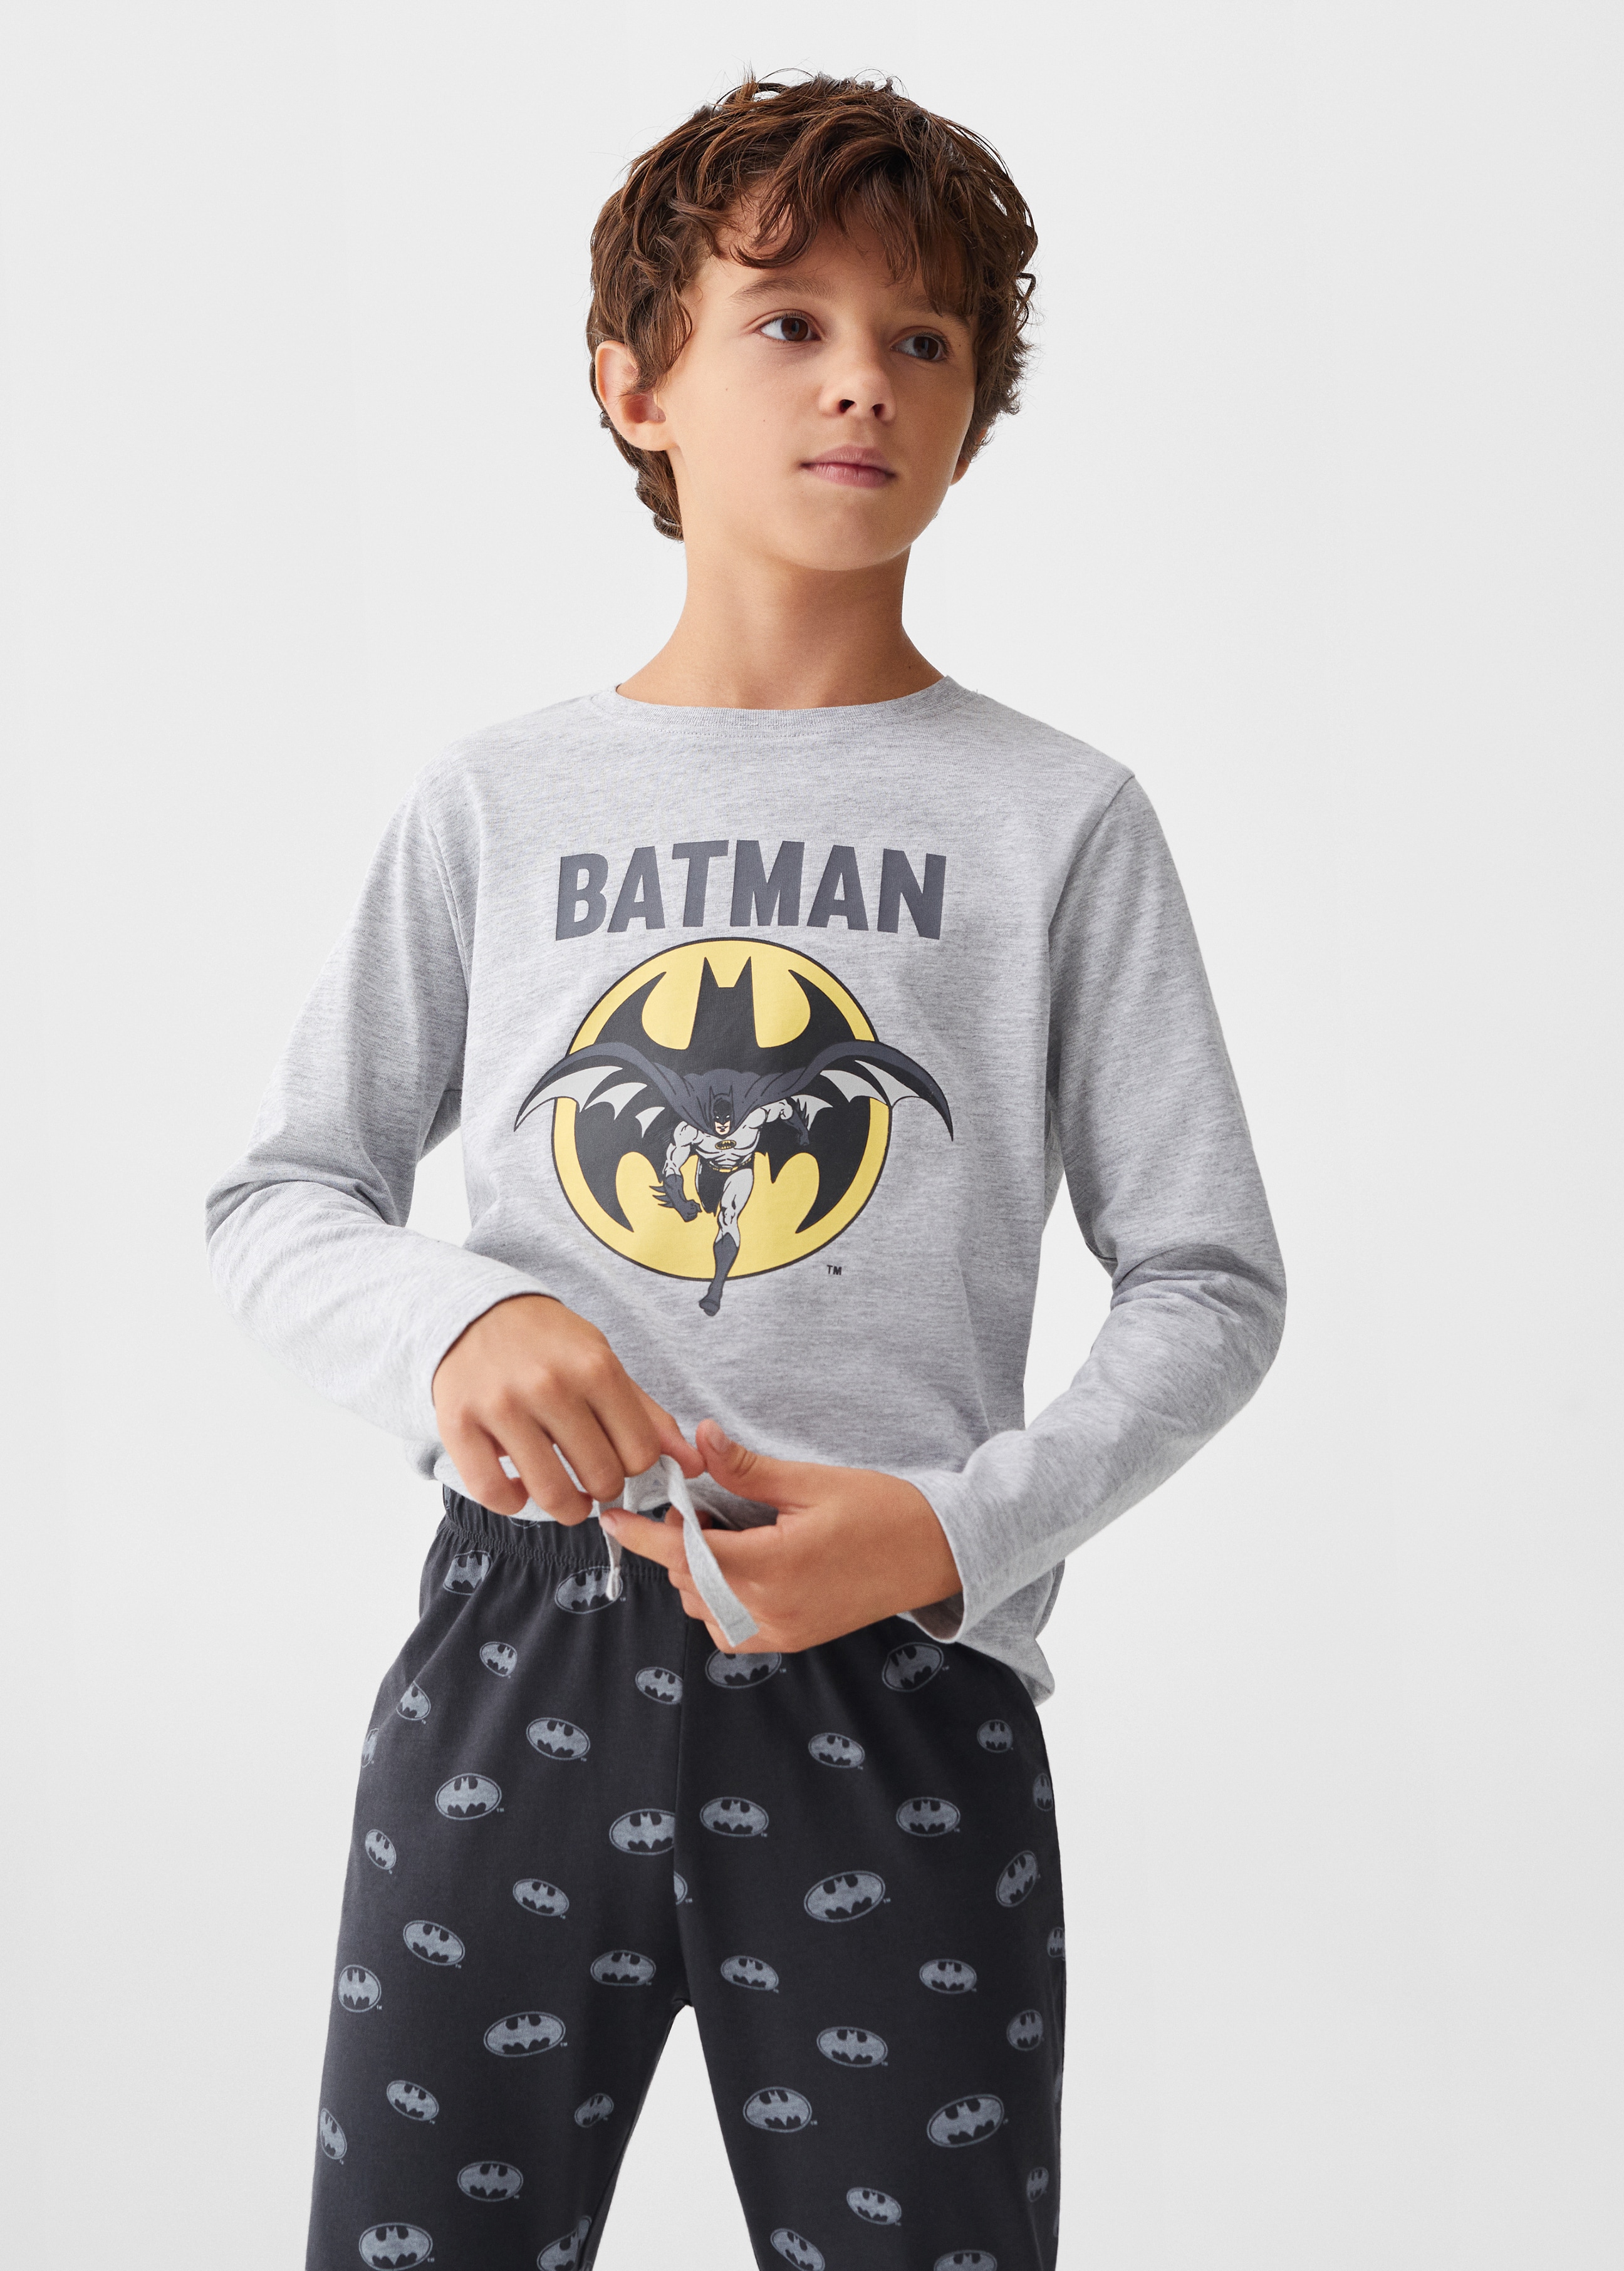 Langer Schlafanzug Batman - Mittlere Ansicht